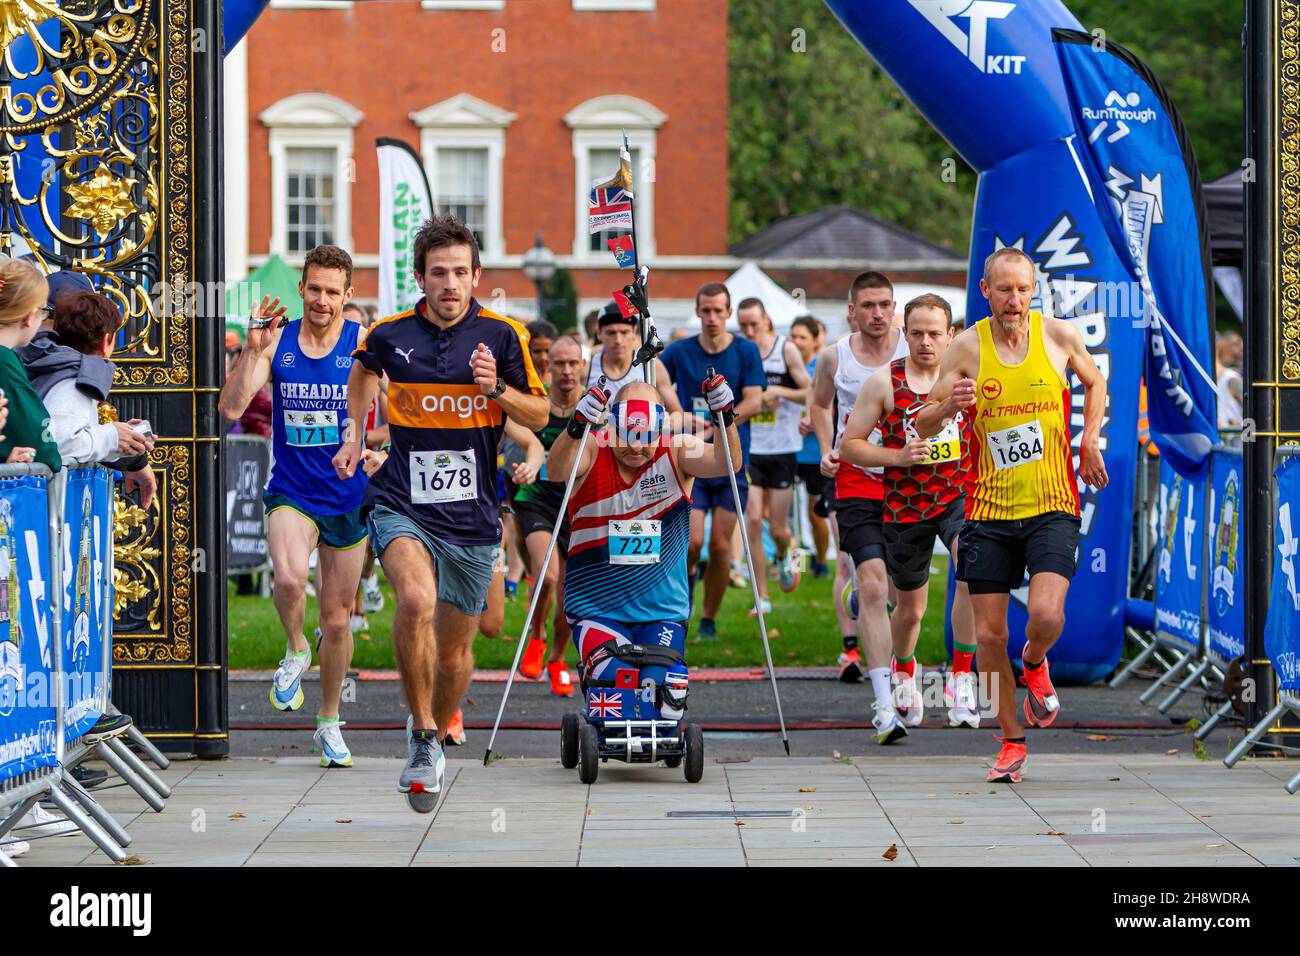 Stephen Hughes, un ex sparatutto Royal Artillery con una lesione spinale, inizia una mezza maratona dalle Golden Gates di Warrington Foto Stock